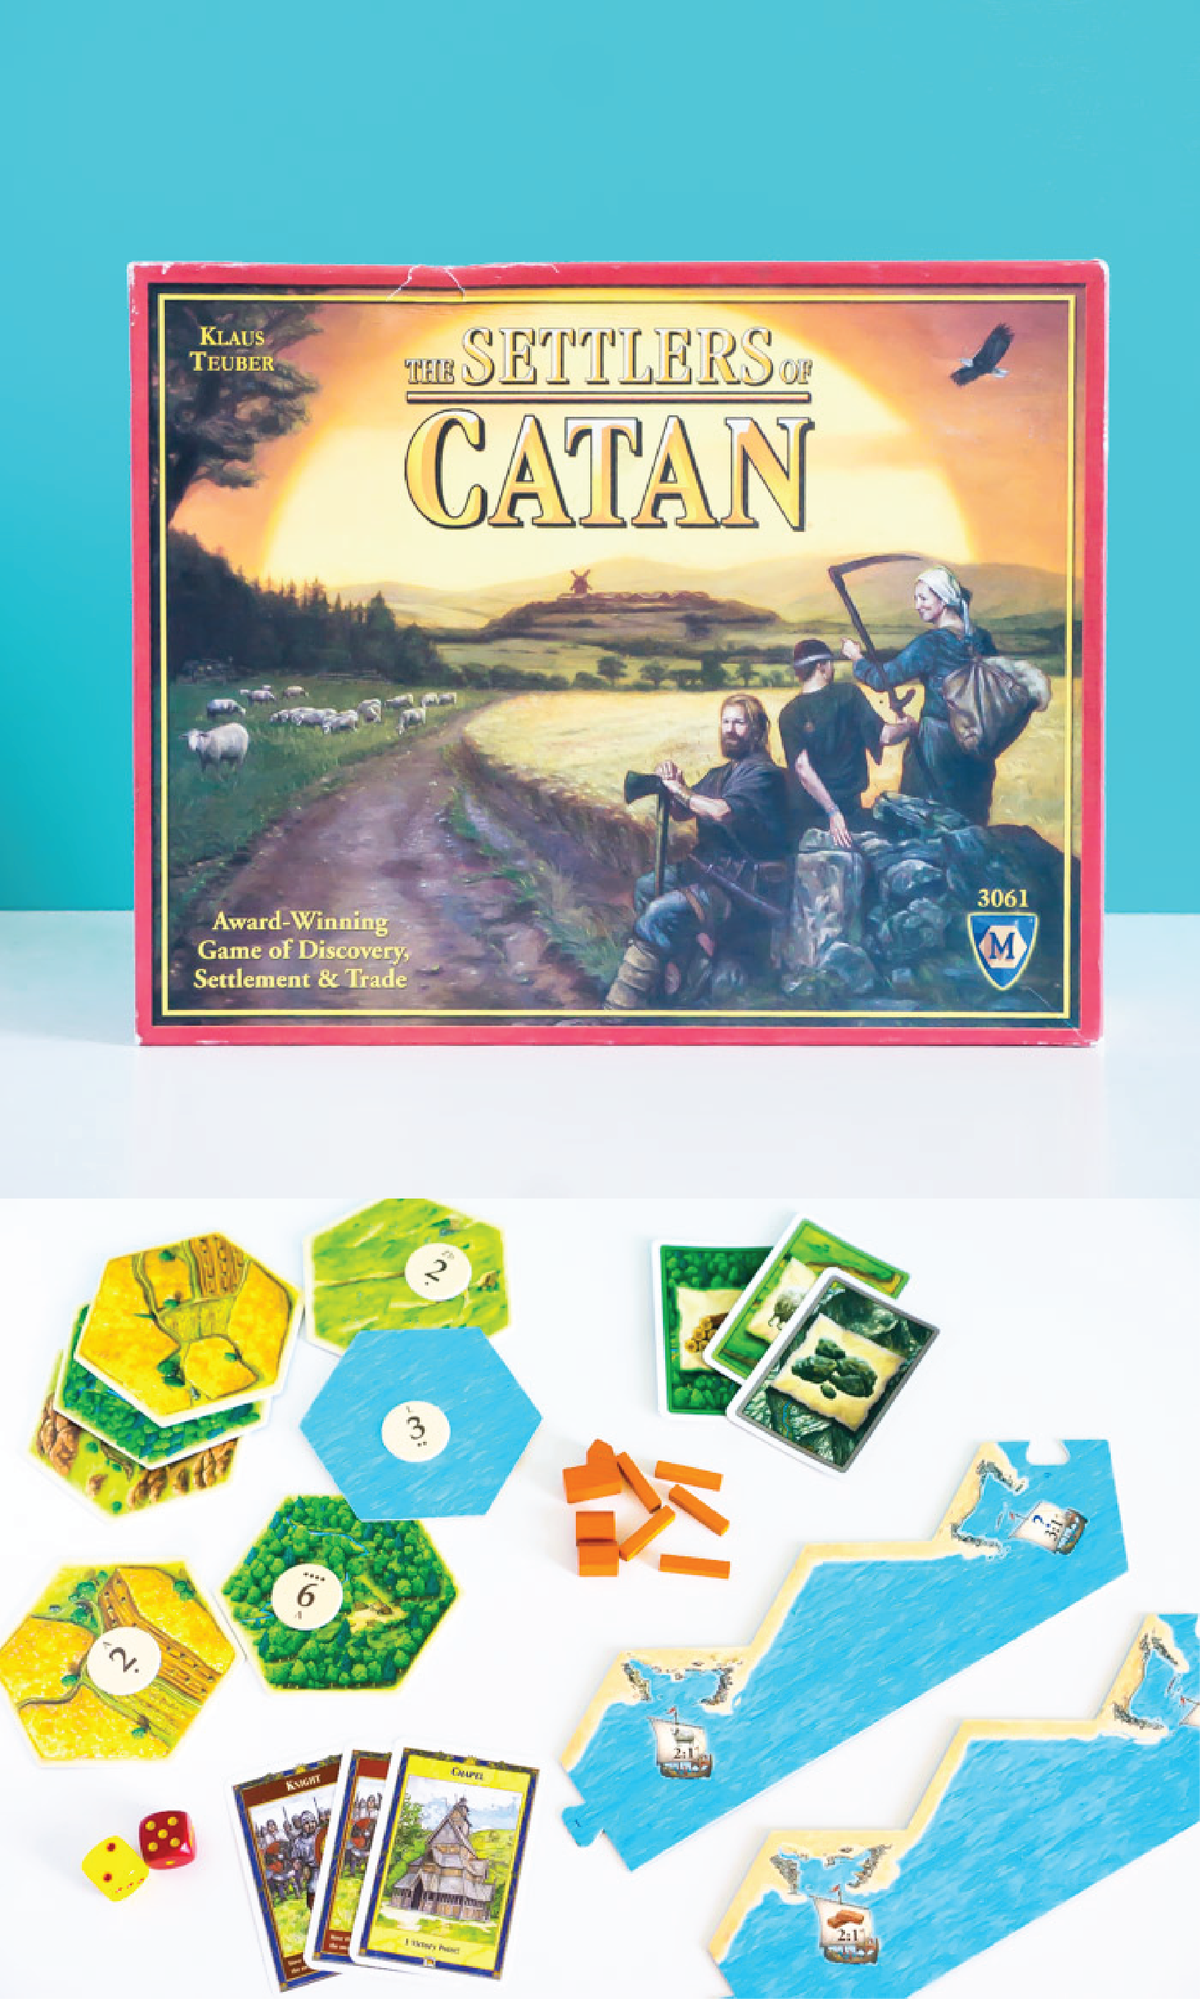 Desková hra Settlers of Catan je klasika